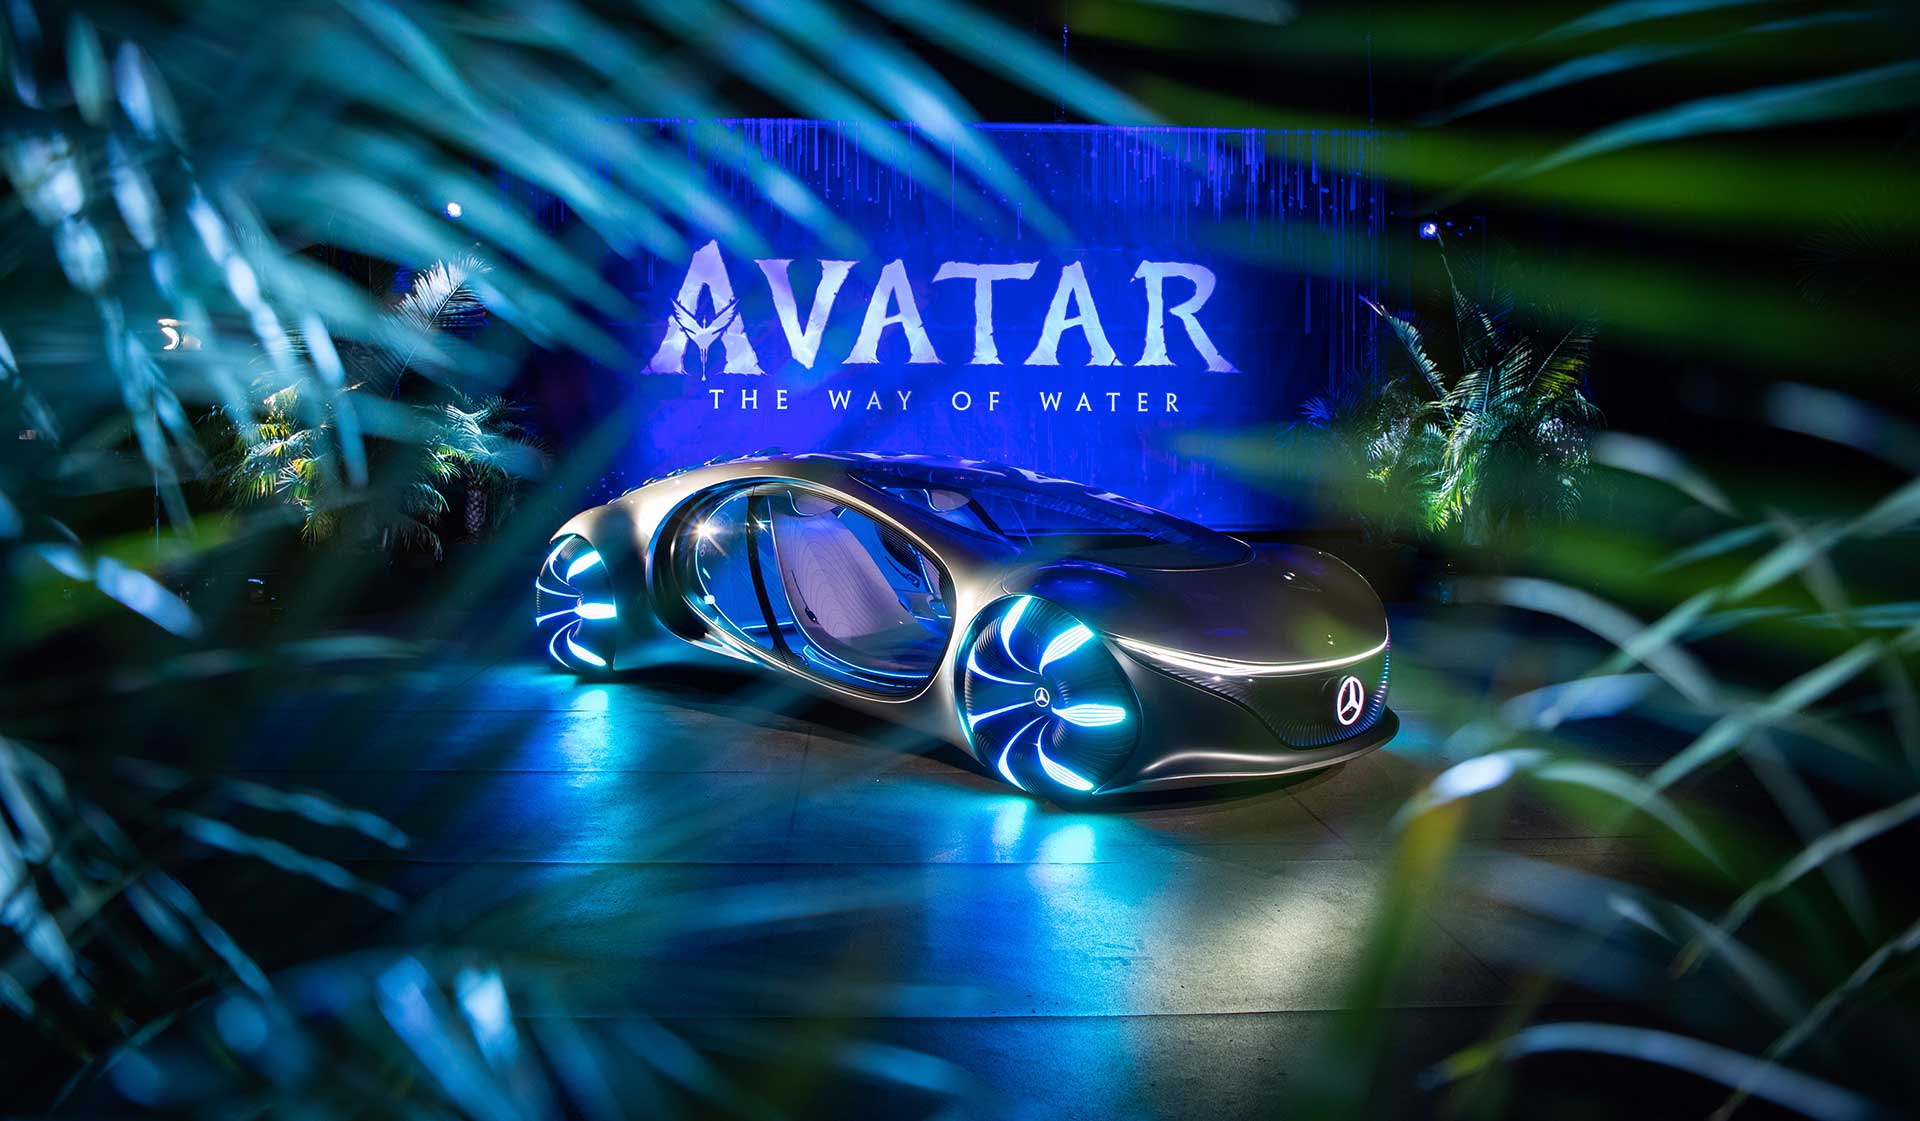 Το Mercedes-Benz VISION AVTR πρωταγωνιστεί στο… Avatar!